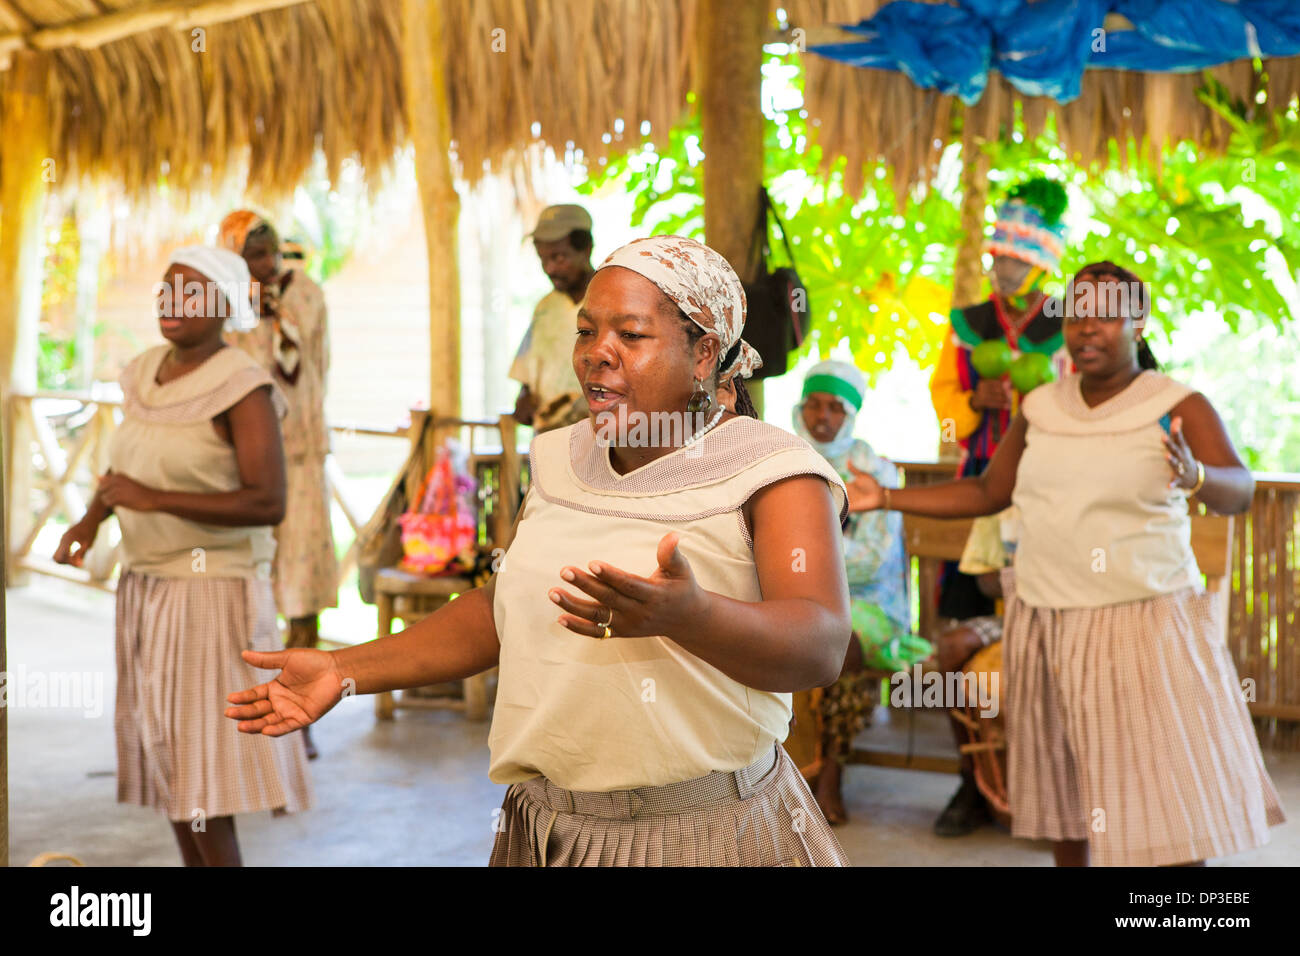 En trajes tradicionales, bailadores Garifuna muestran sus raíces culturales en Yubu experiencia Garifuna. Roatán, Honduras Foto de stock